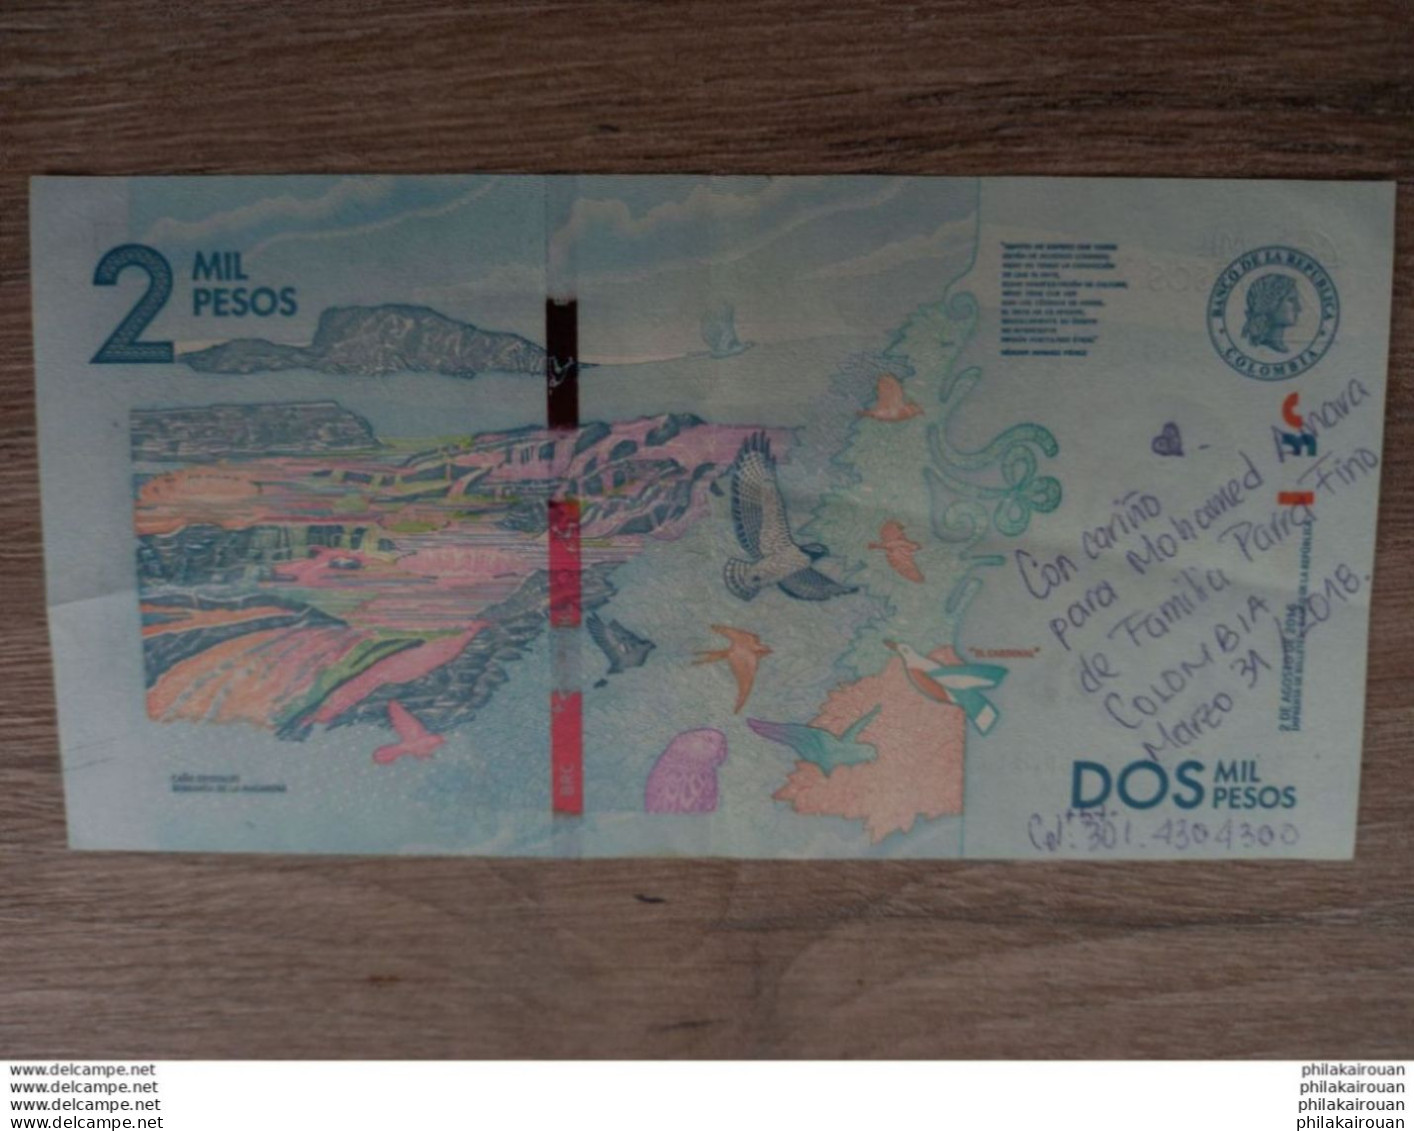 COLOMBIA P458b 2000 Pesos 2.8.2016 .avec Ses Inscriptions Au Stylo - Colombie